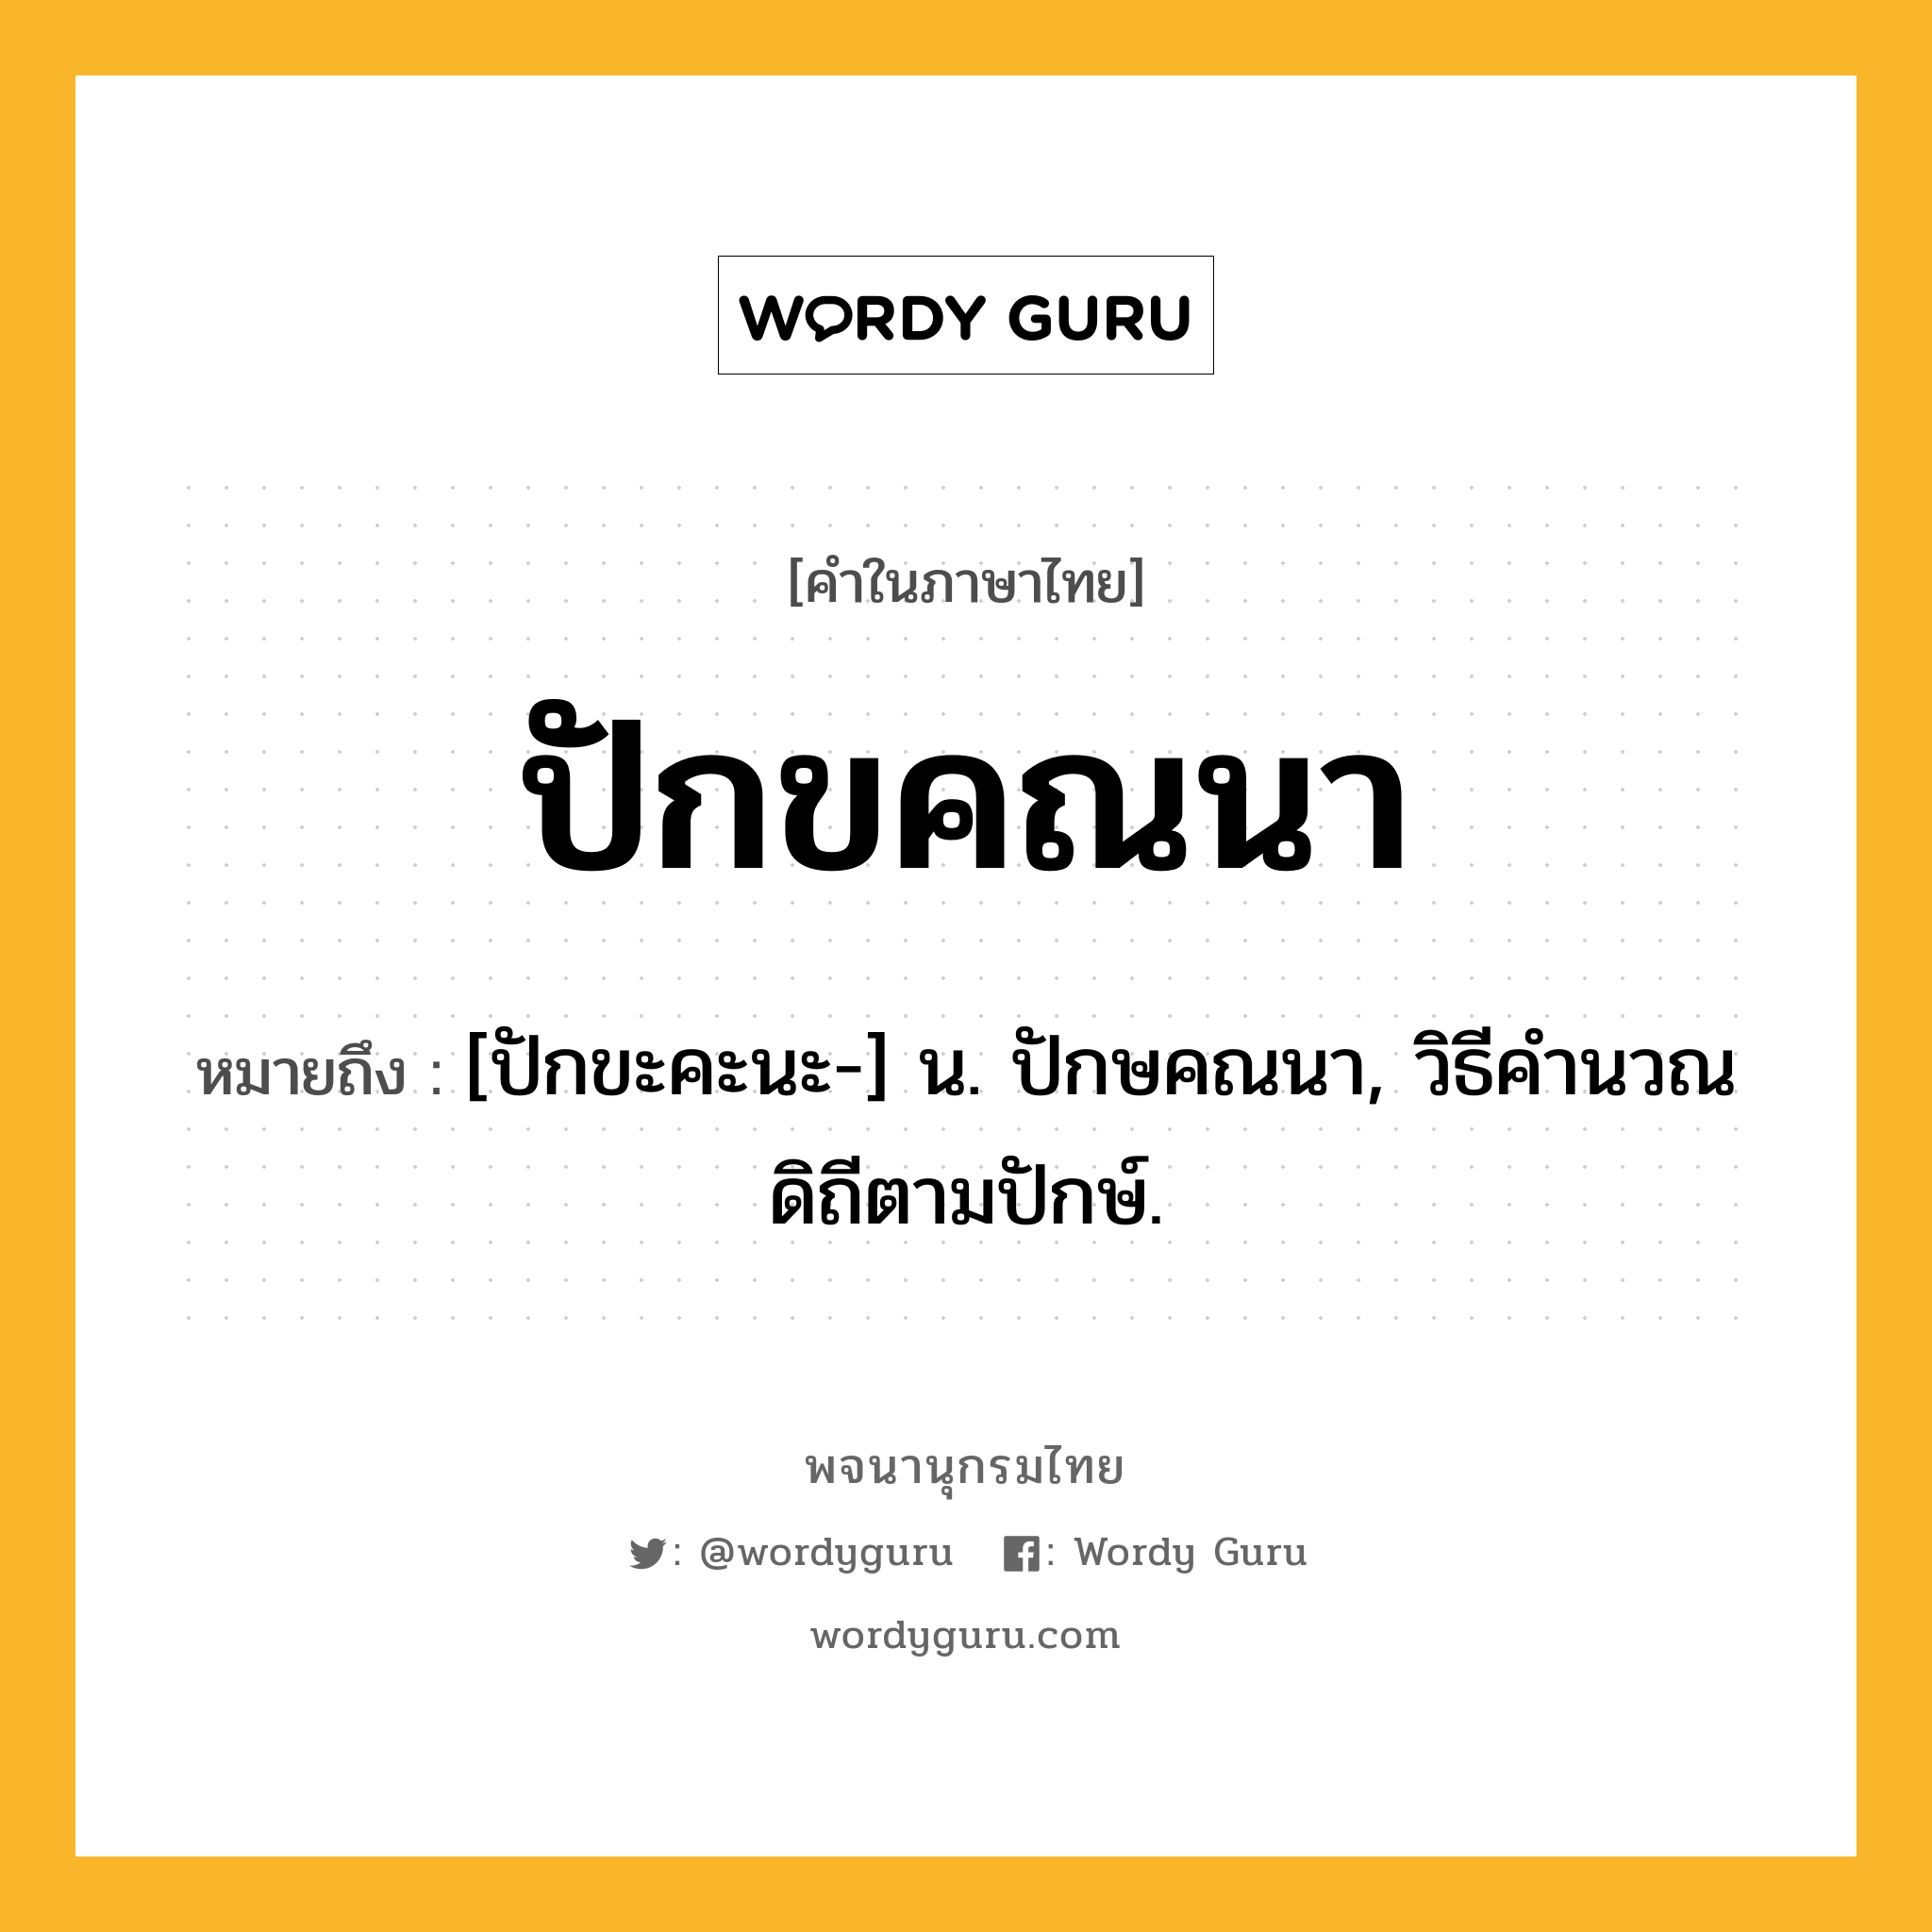 ปักขคณนา หมายถึงอะไร?, คำในภาษาไทย ปักขคณนา หมายถึง [ปักขะคะนะ-] น. ปักษคณนา, วิธีคำนวณดิถีตามปักษ์.